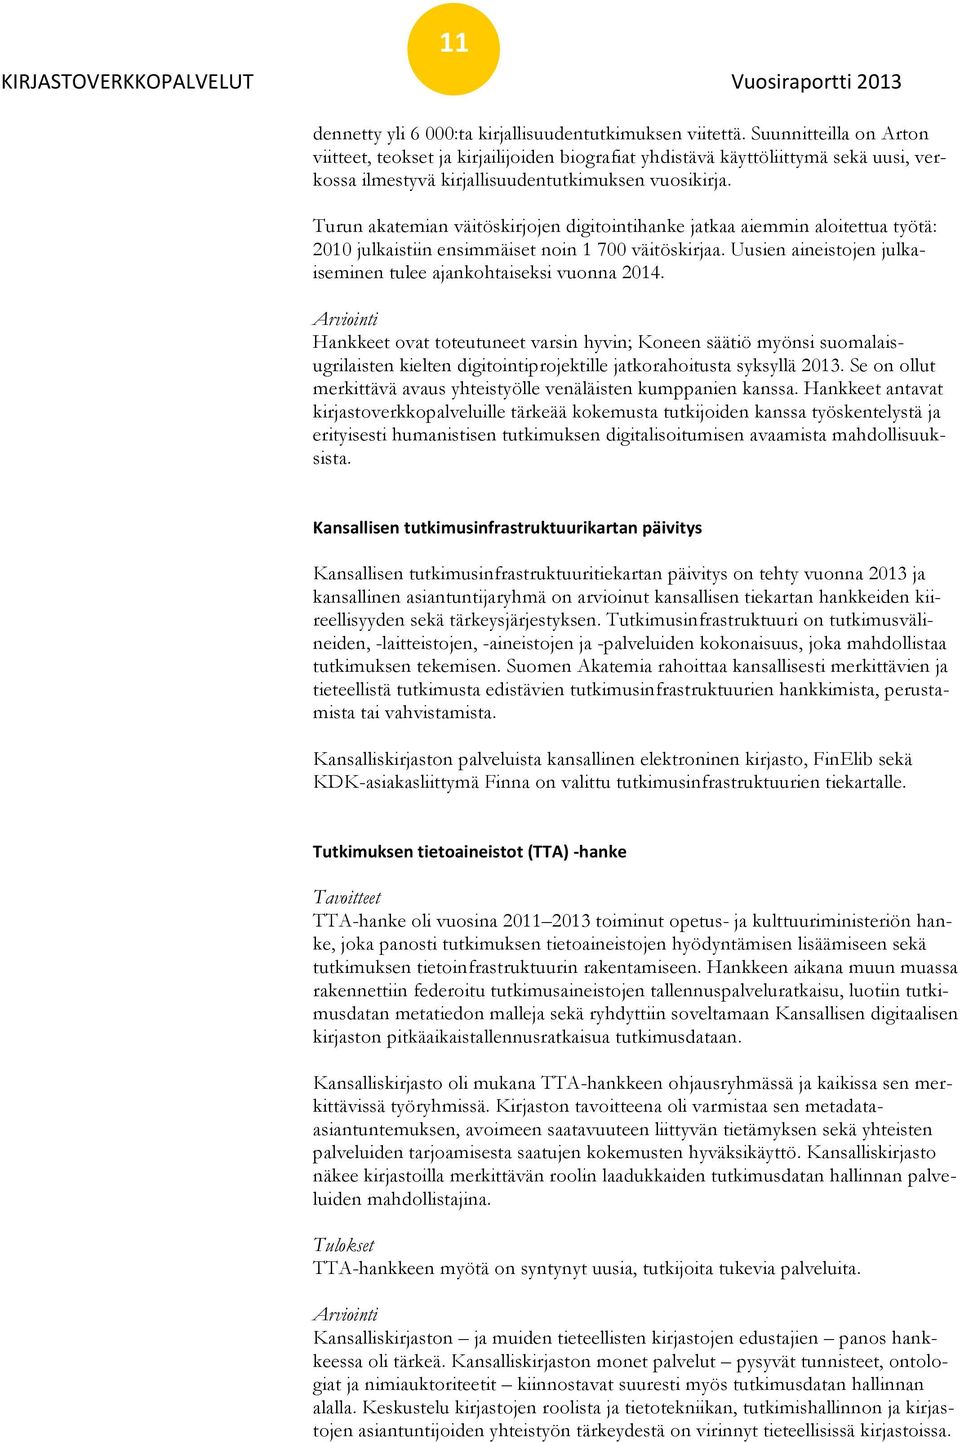 Turun akatemian väitöskirjojen digitointihanke jatkaa aiemmin aloitettua työtä: 2010 julkaistiin ensimmäiset noin 1 700 väitöskirjaa.